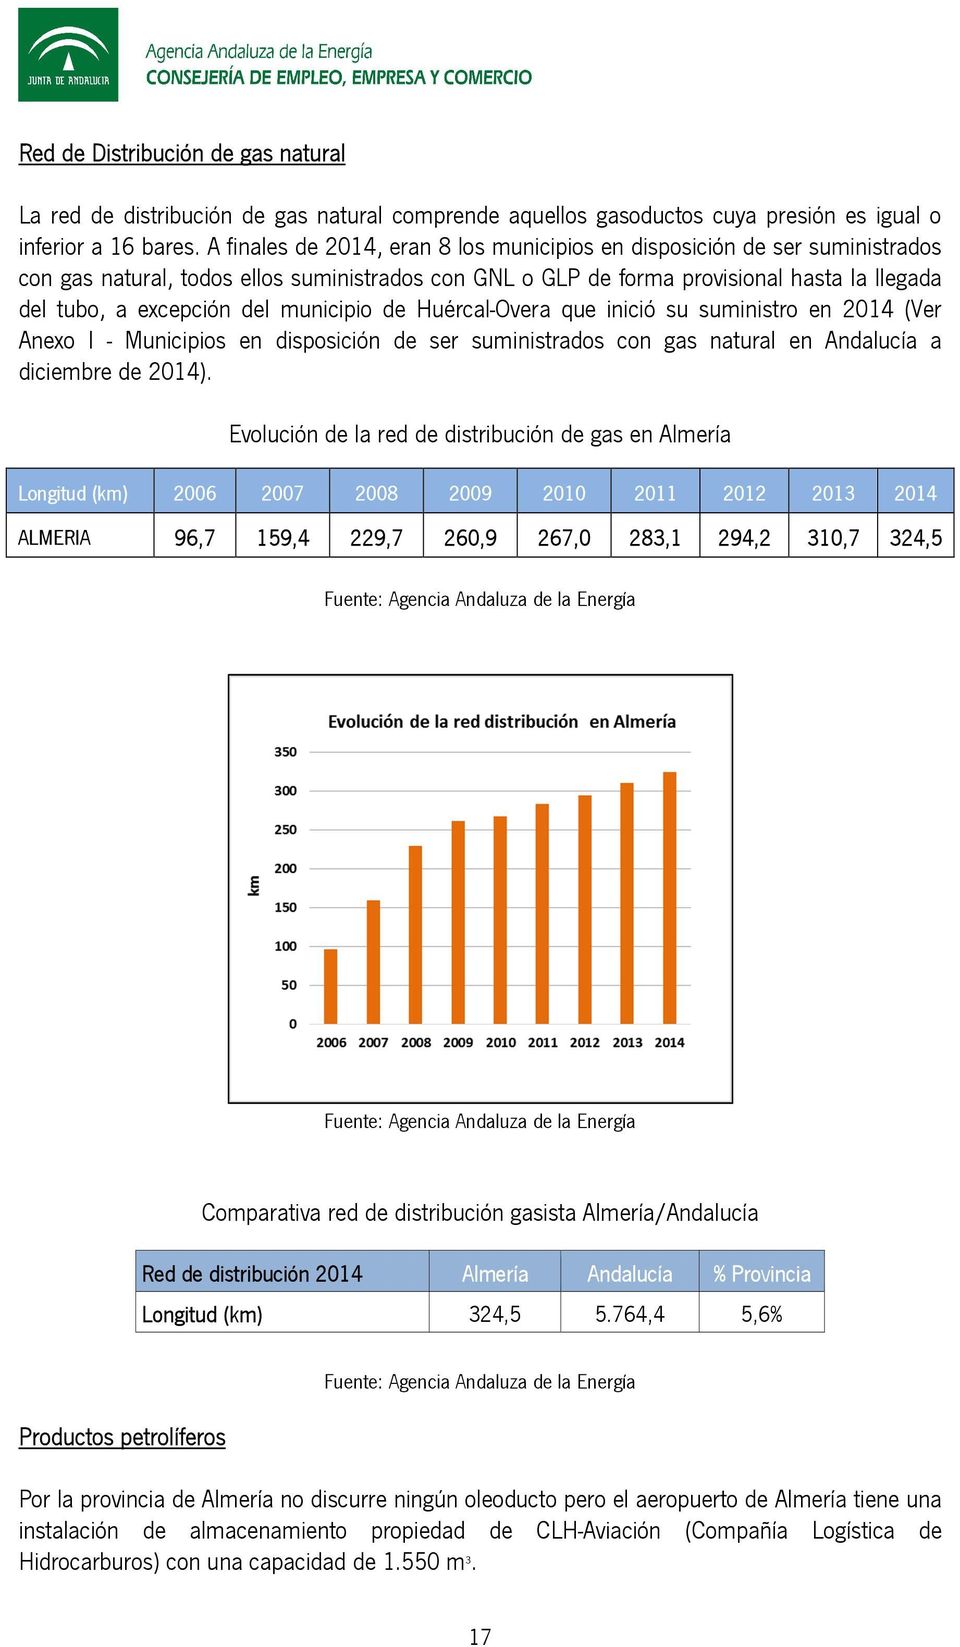 municipio de Huércal-Overa que inició su suministro en 2014 (Ver Anexo I - Municipios en disposición de ser suministrados con gas natural en Andalucía a diciembre de 2014).